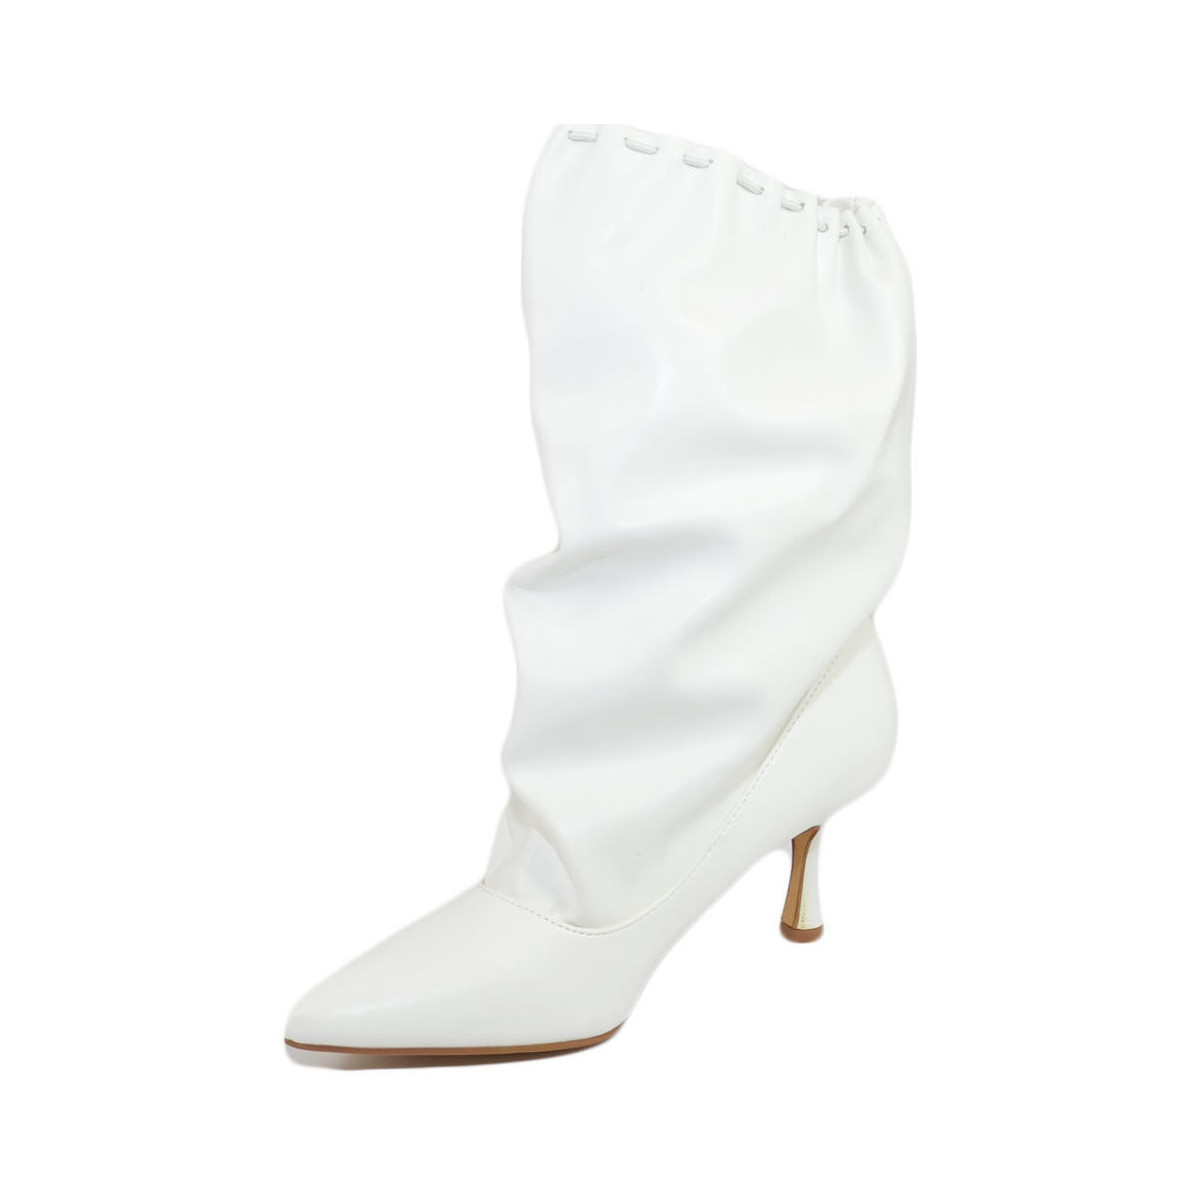 Scarpe Donna Tronchetti Malu Shoes Stivali donna tronchetto a punta bianco in pelle con tacco midi Bianco